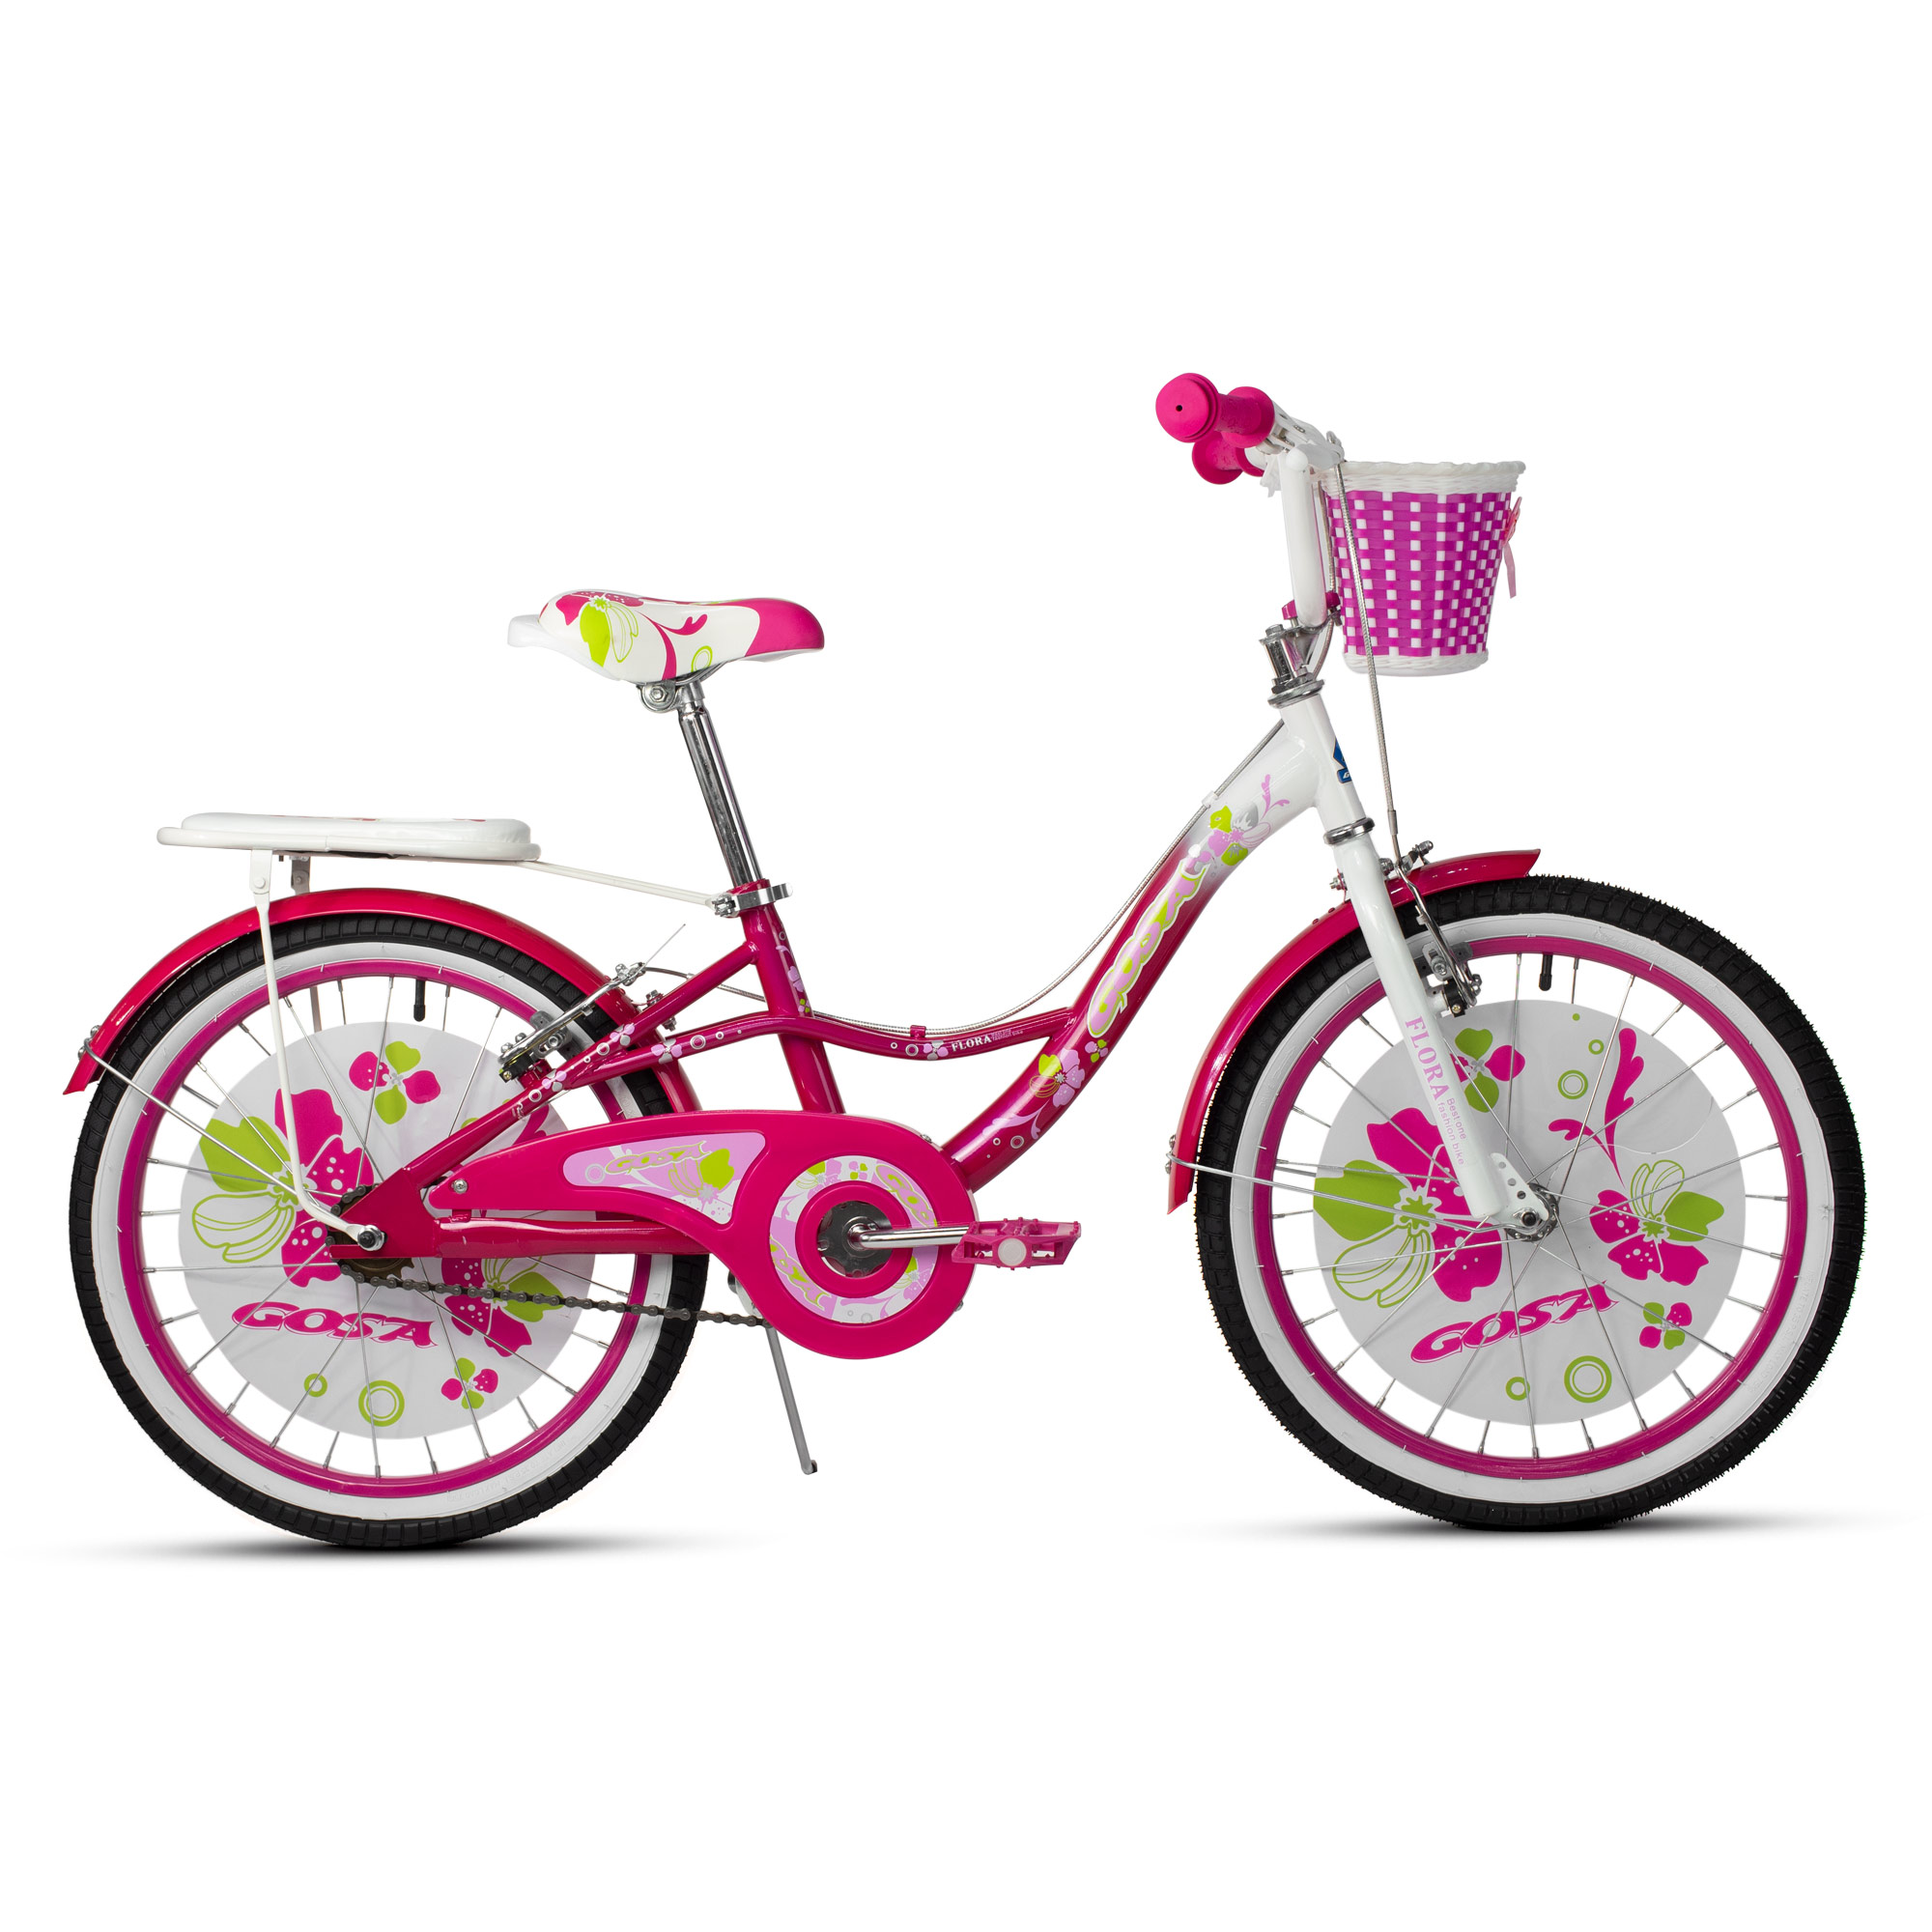 Ciclometa Detalles Bicicleta R 12 Infantil para Niña Nice Girl 1 Velocidad  Gosa